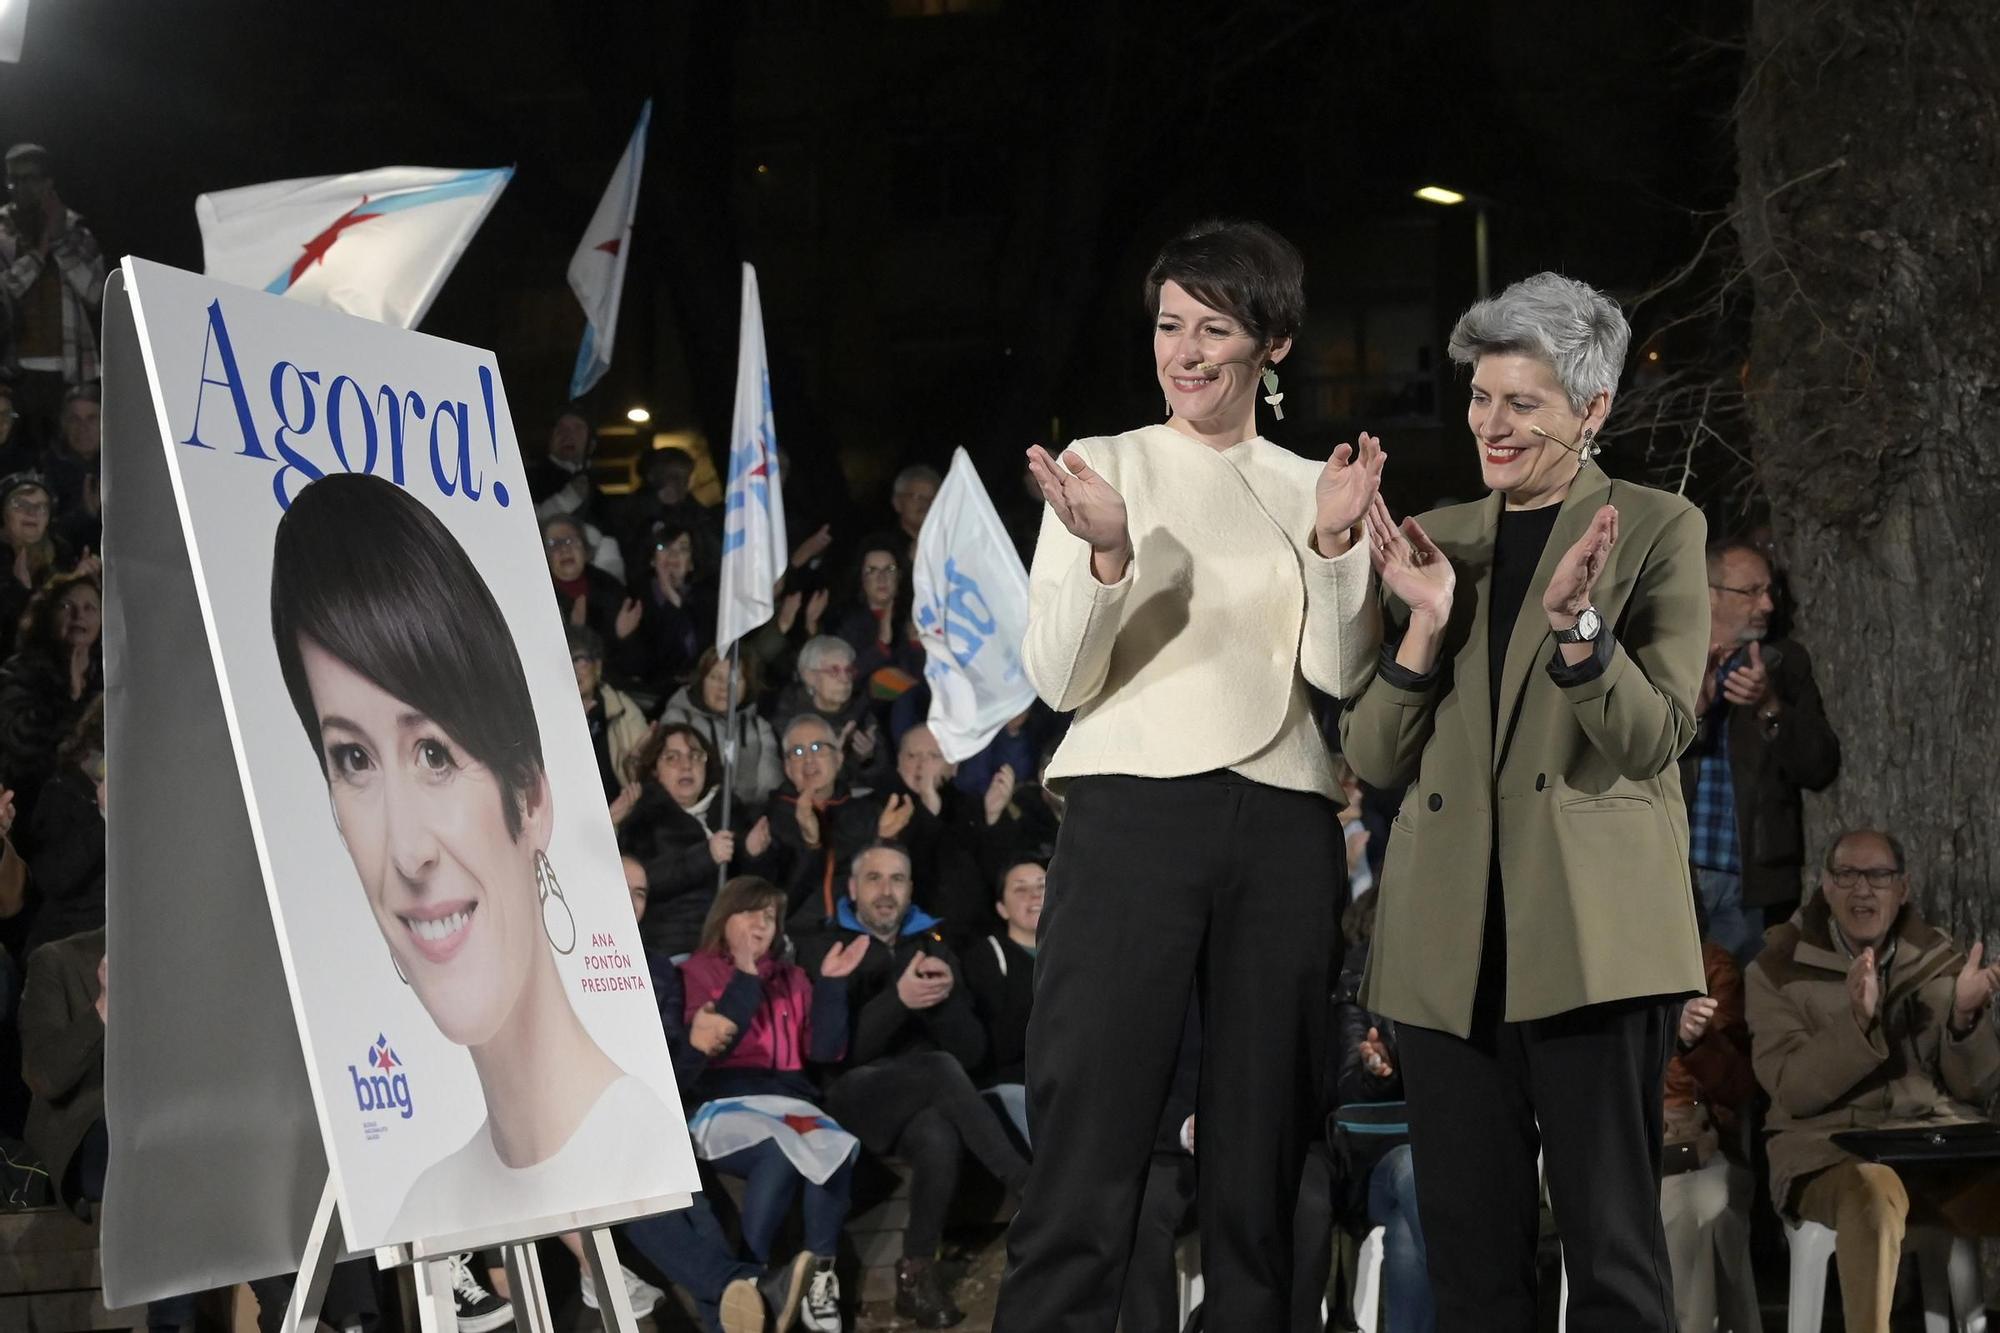 Así ha sido el inicio de la campaña electoral en Galicia con el tradicional acto de pegada de carteles